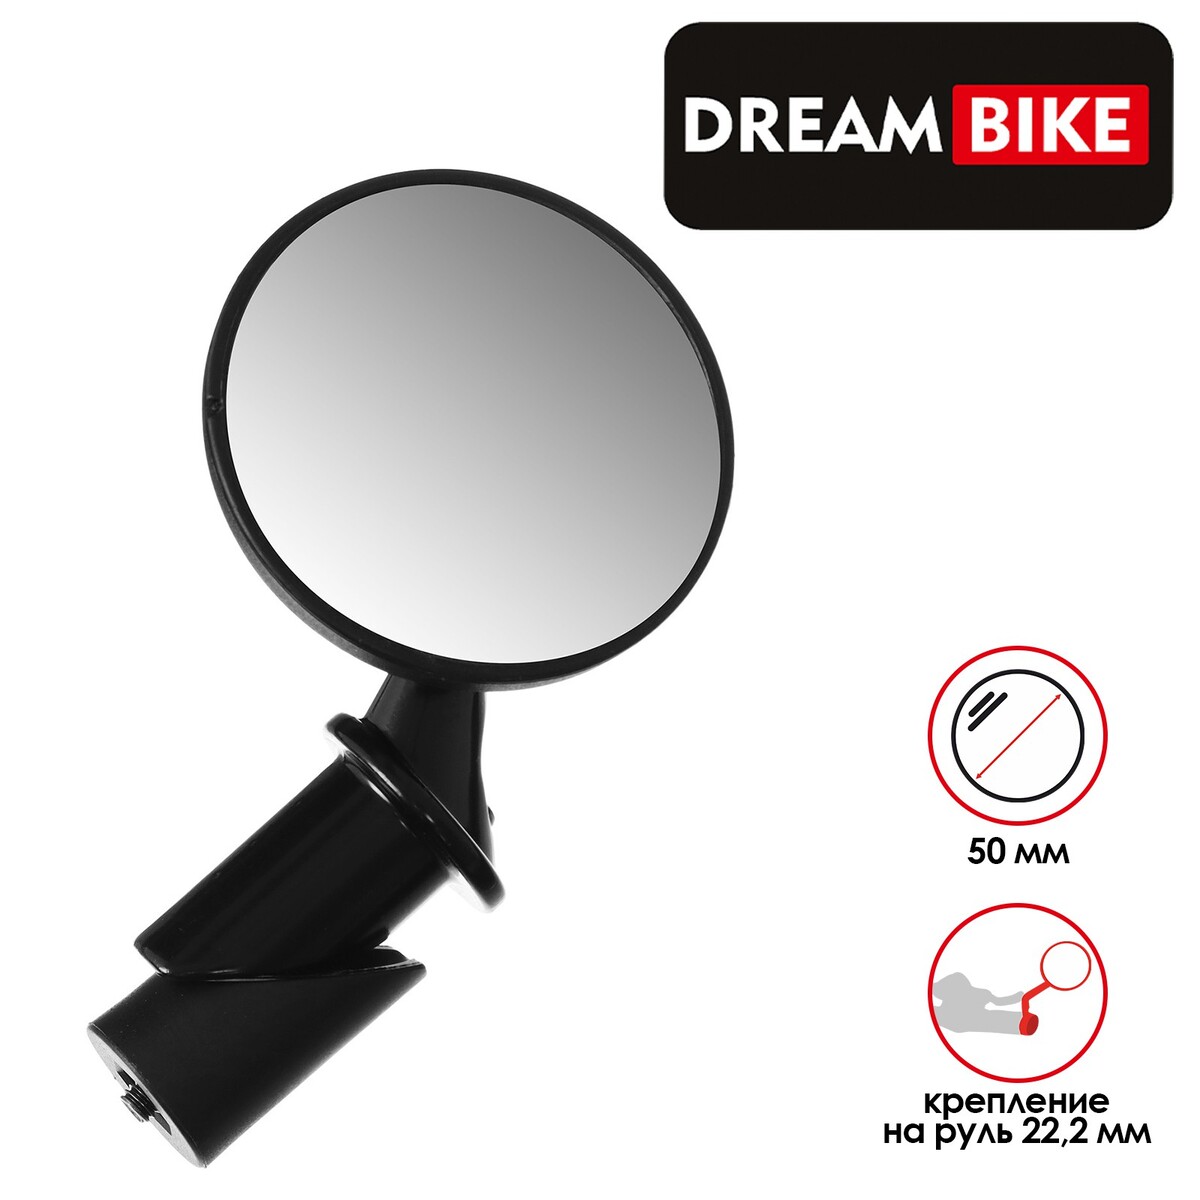 Зеркало заднего вида dream bike, jy-16, Dream Bike